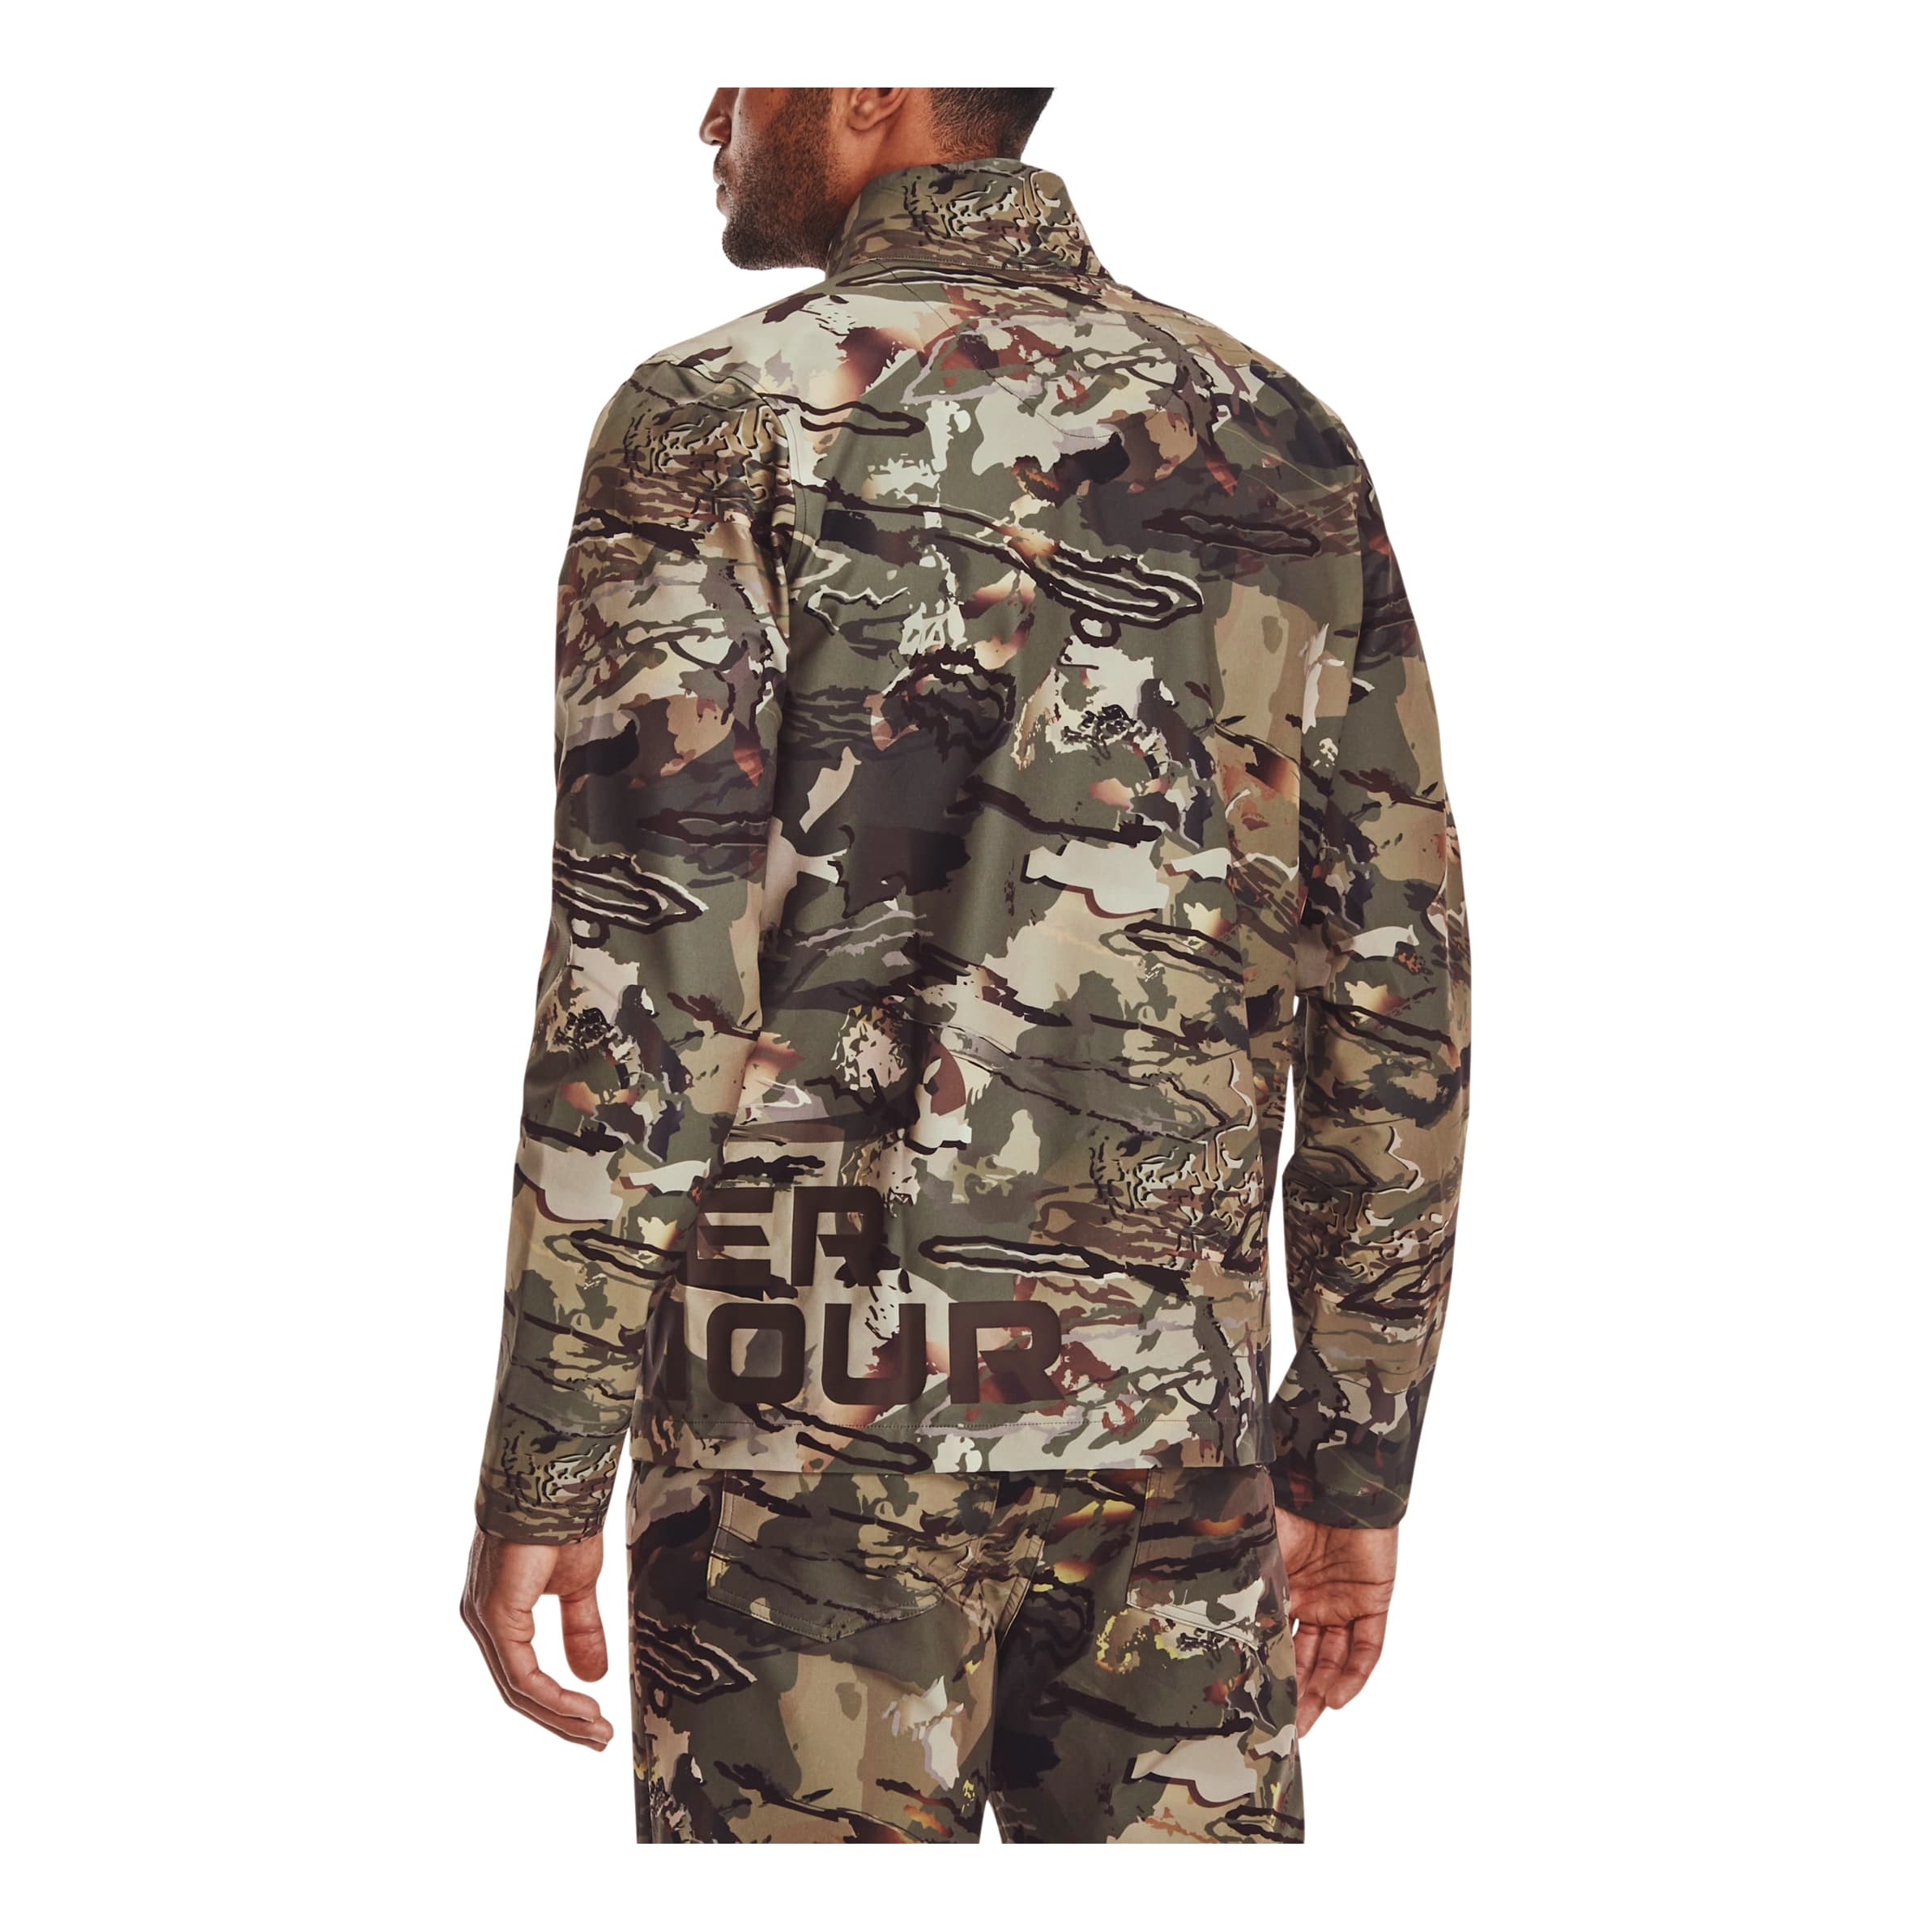 Under Armour® Men’s Hardwoods Graphic Jacket